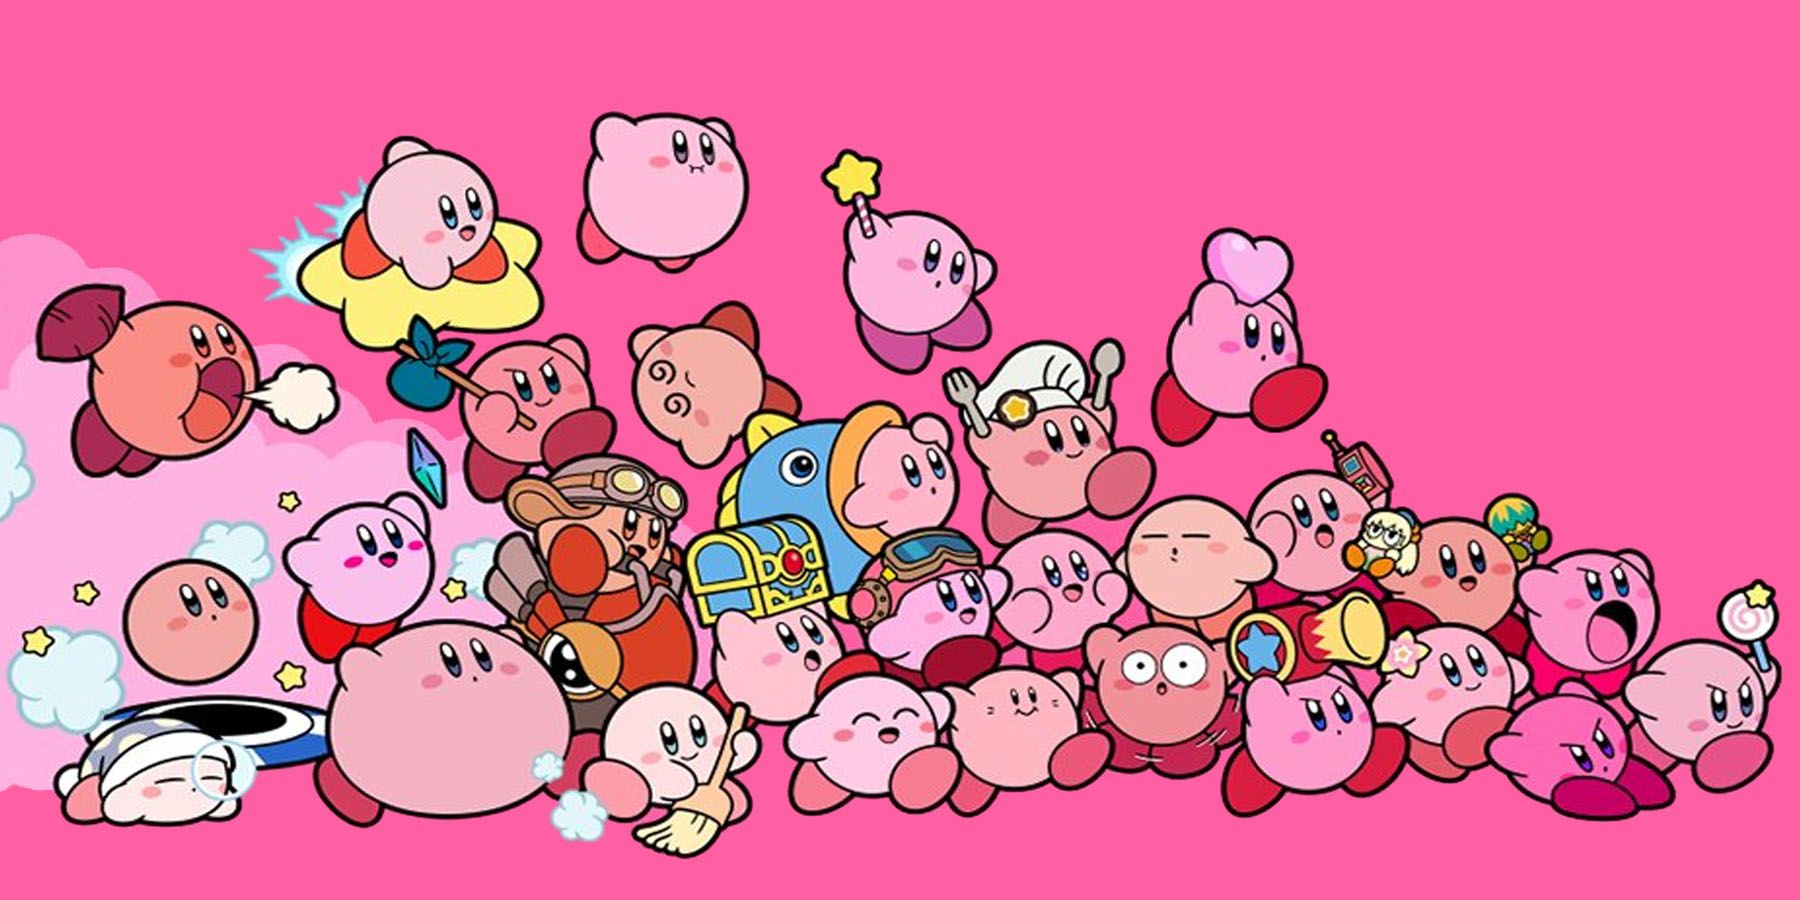 Game Kirby mới chưa được thông báo sắp tới đây sẽ mang đến cho bạn nhiều niềm vui và bất ngờ. Cùng ngóng trông và chờ đợi bức ảnh mới nhất liên quan đến trò chơi này để khám phá những nhân vật mới hoặc những chế độ chơi đặc sắc.